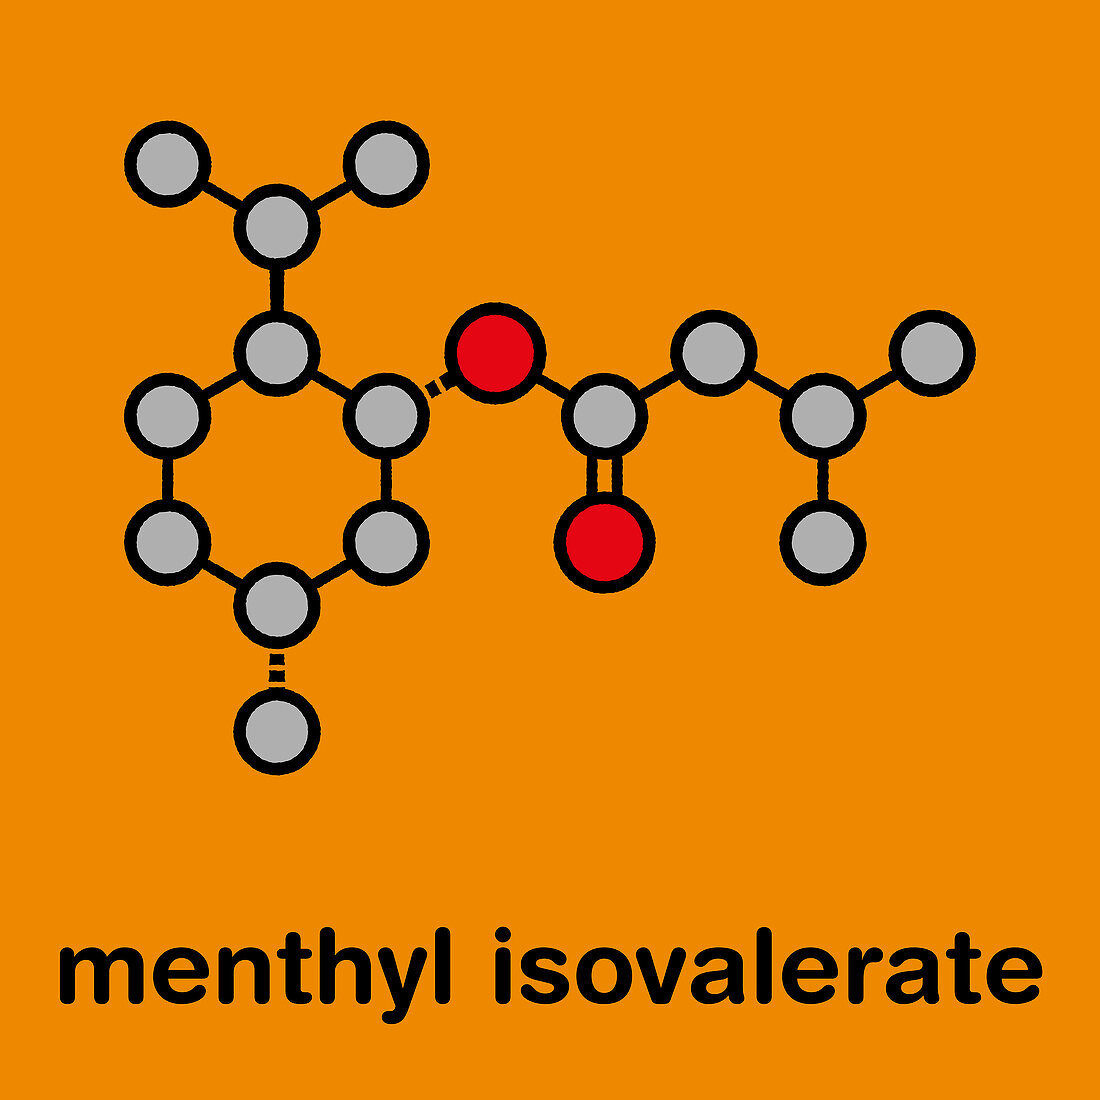 Menthyl isovalerate drug molecule, illustration